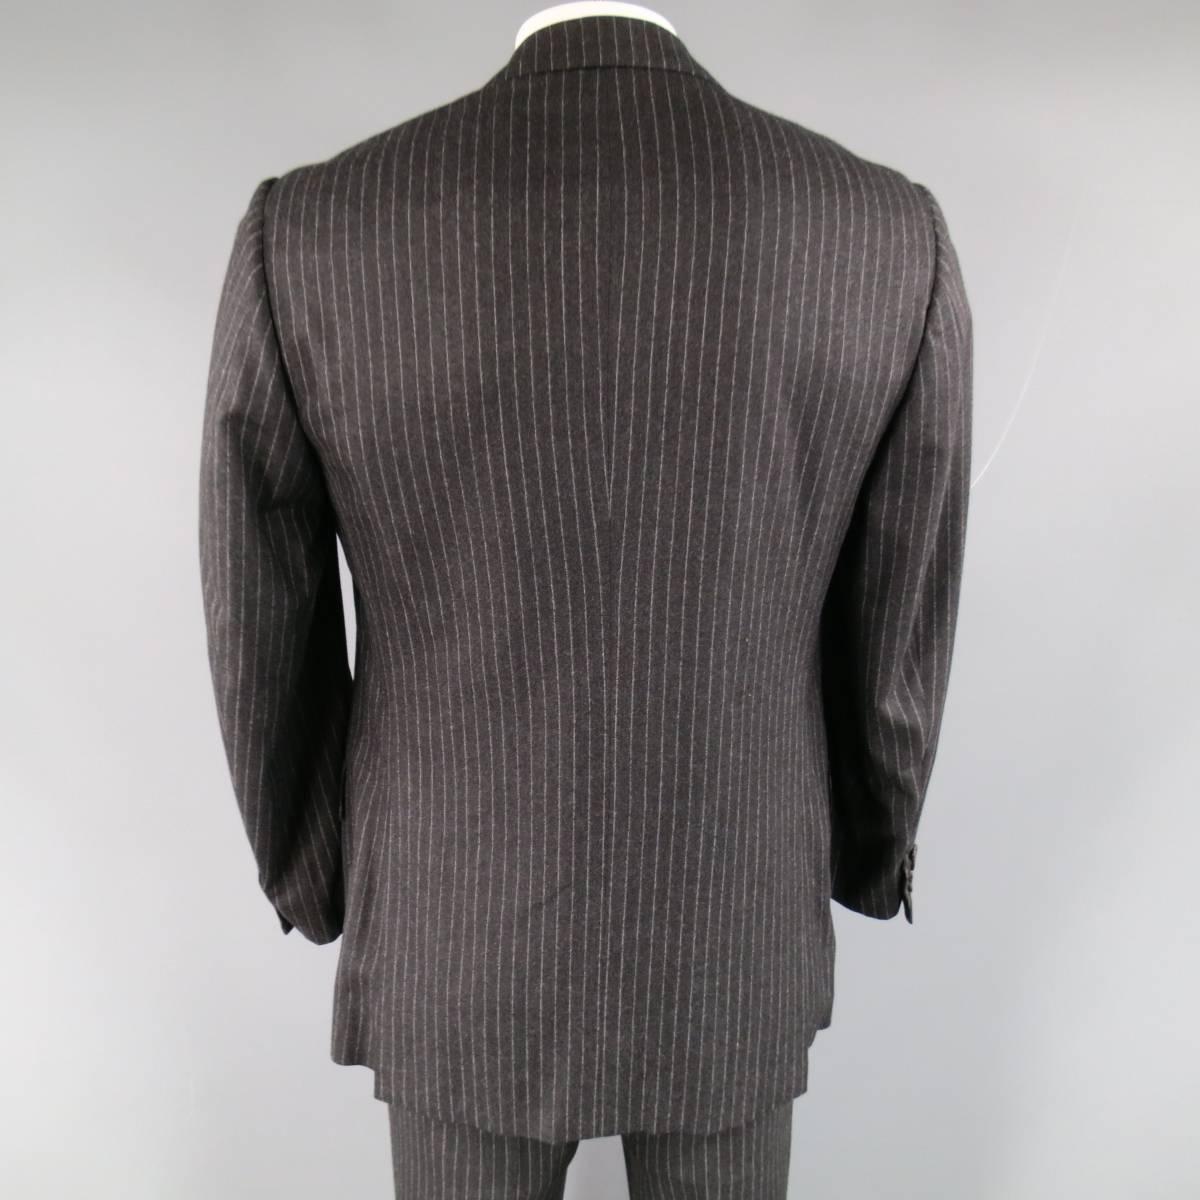 Black Men's KITON 40 Regular Charcoal Pinstripe Wool 33 30 3 Button Suit